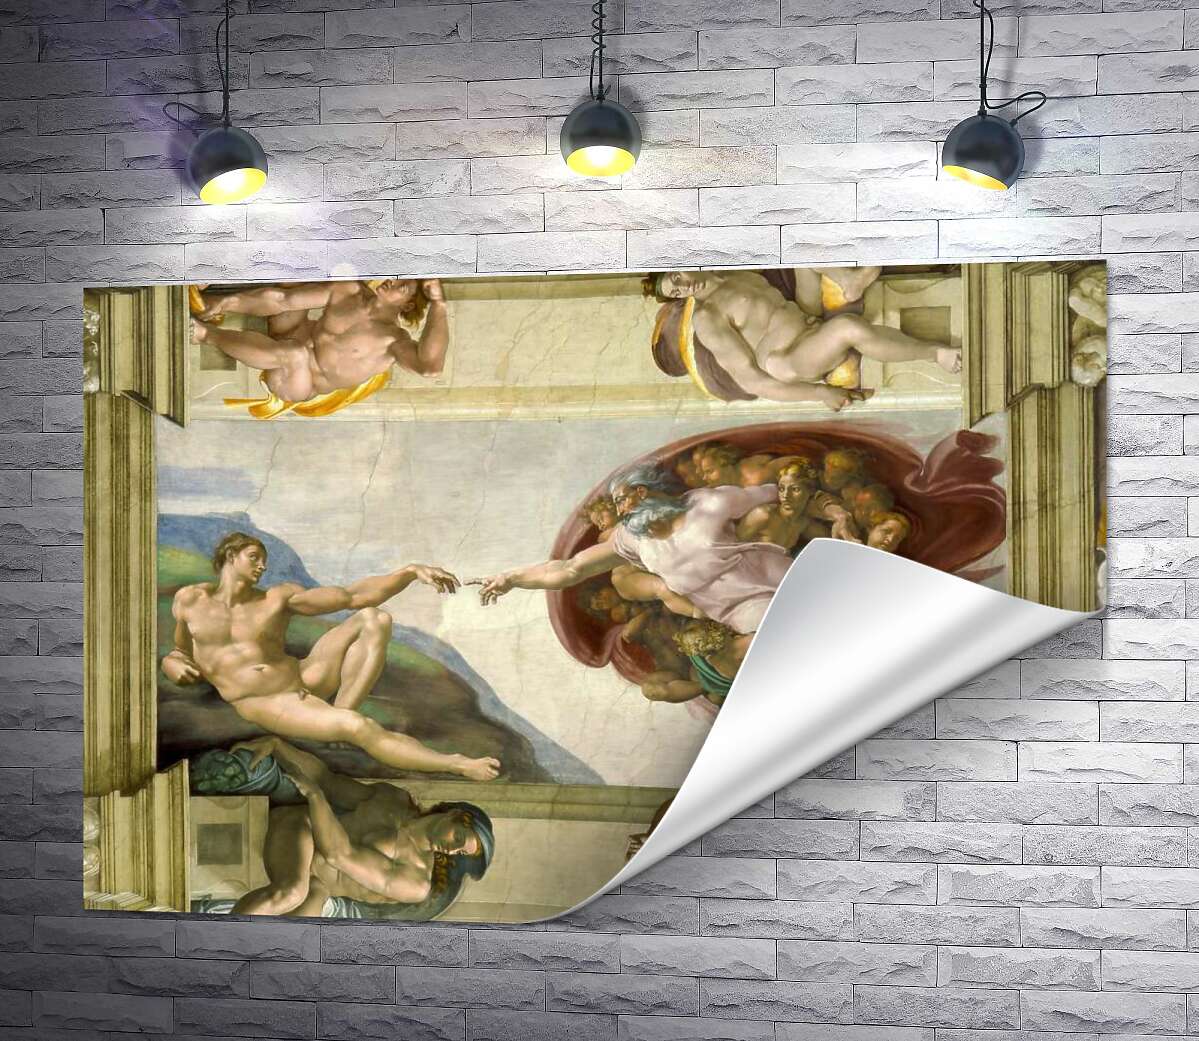 друк Створення Адама (La creazione di Adamo) - Мікеланджело Буонарроті (Michelangelo Buonarroti)